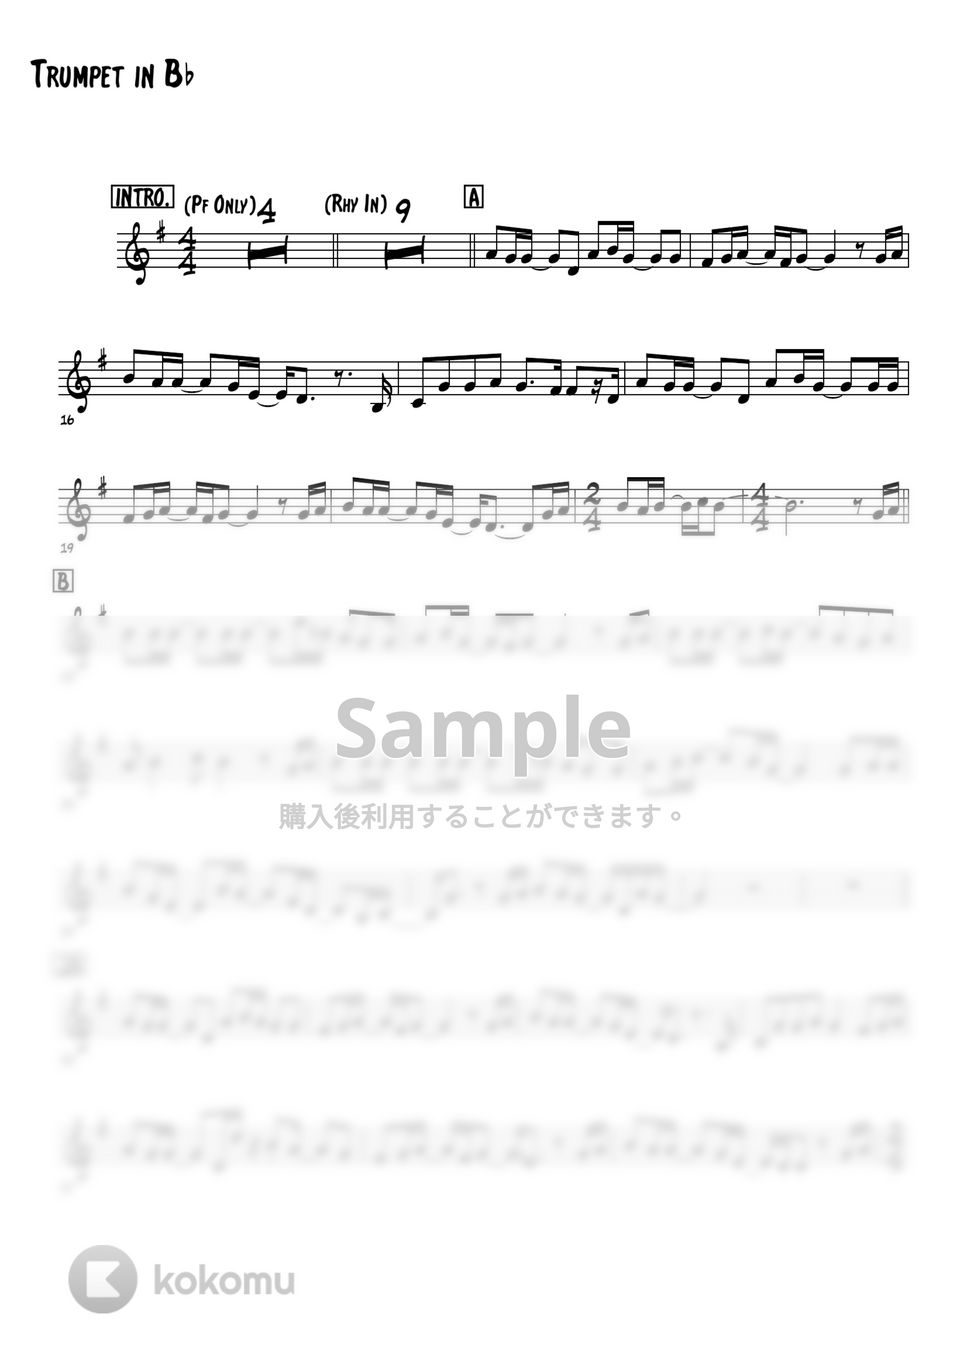 スキマスイッチ - 奏 (トランペットメロディー楽譜) by 高田将利